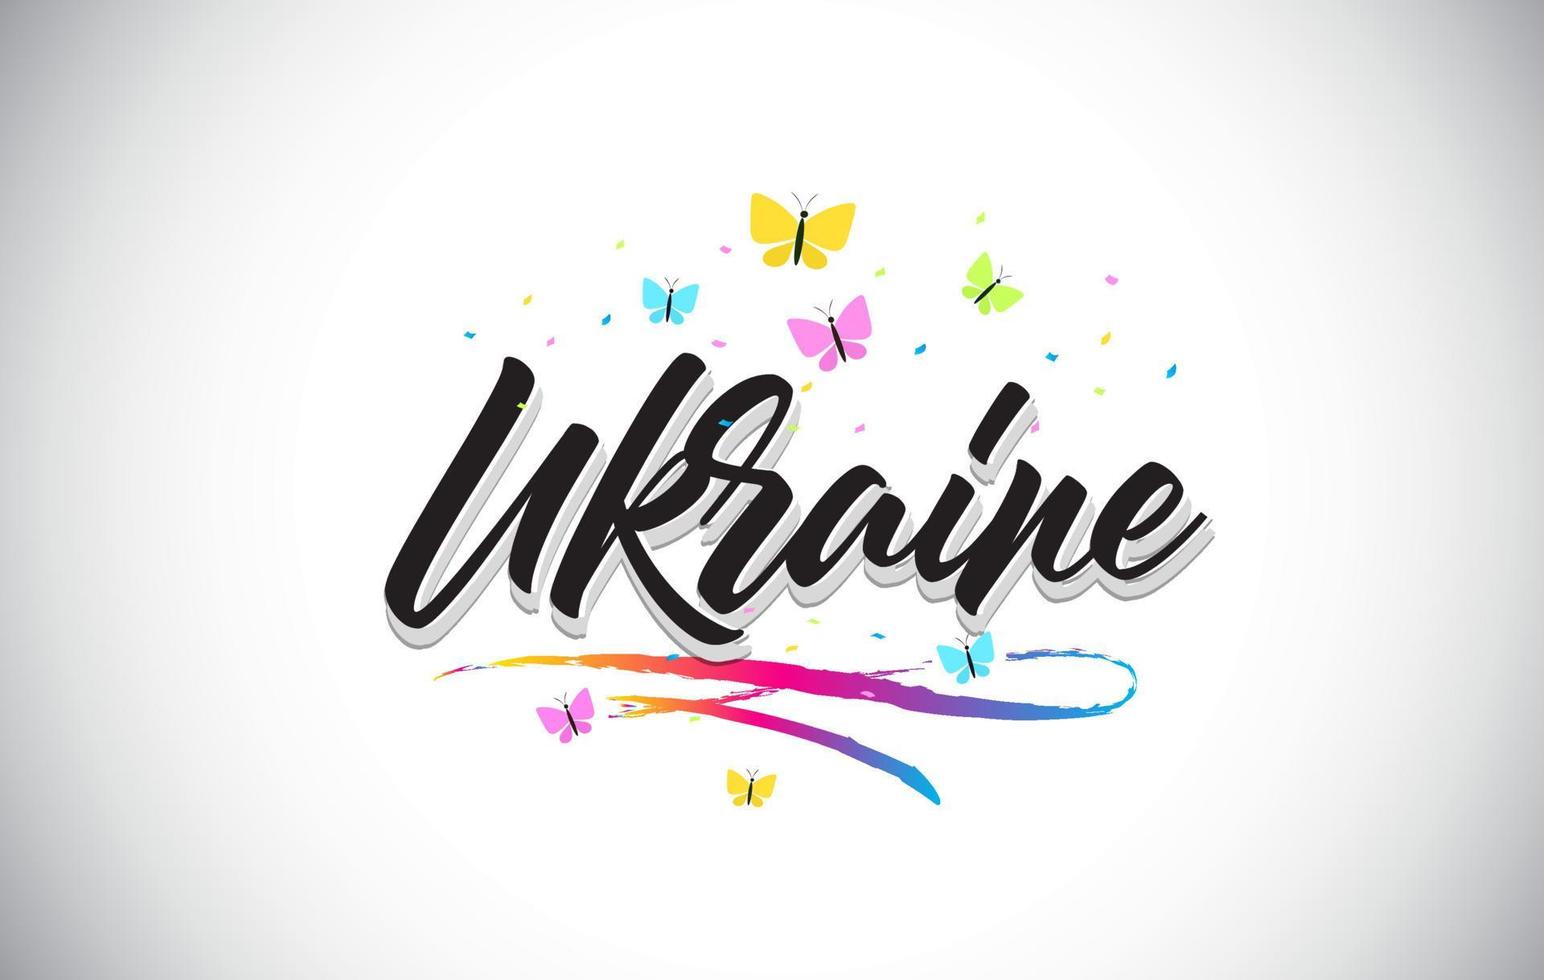 testo di parola vettoriale scritto a mano dell'Ucraina con farfalle e swoosh colorato.